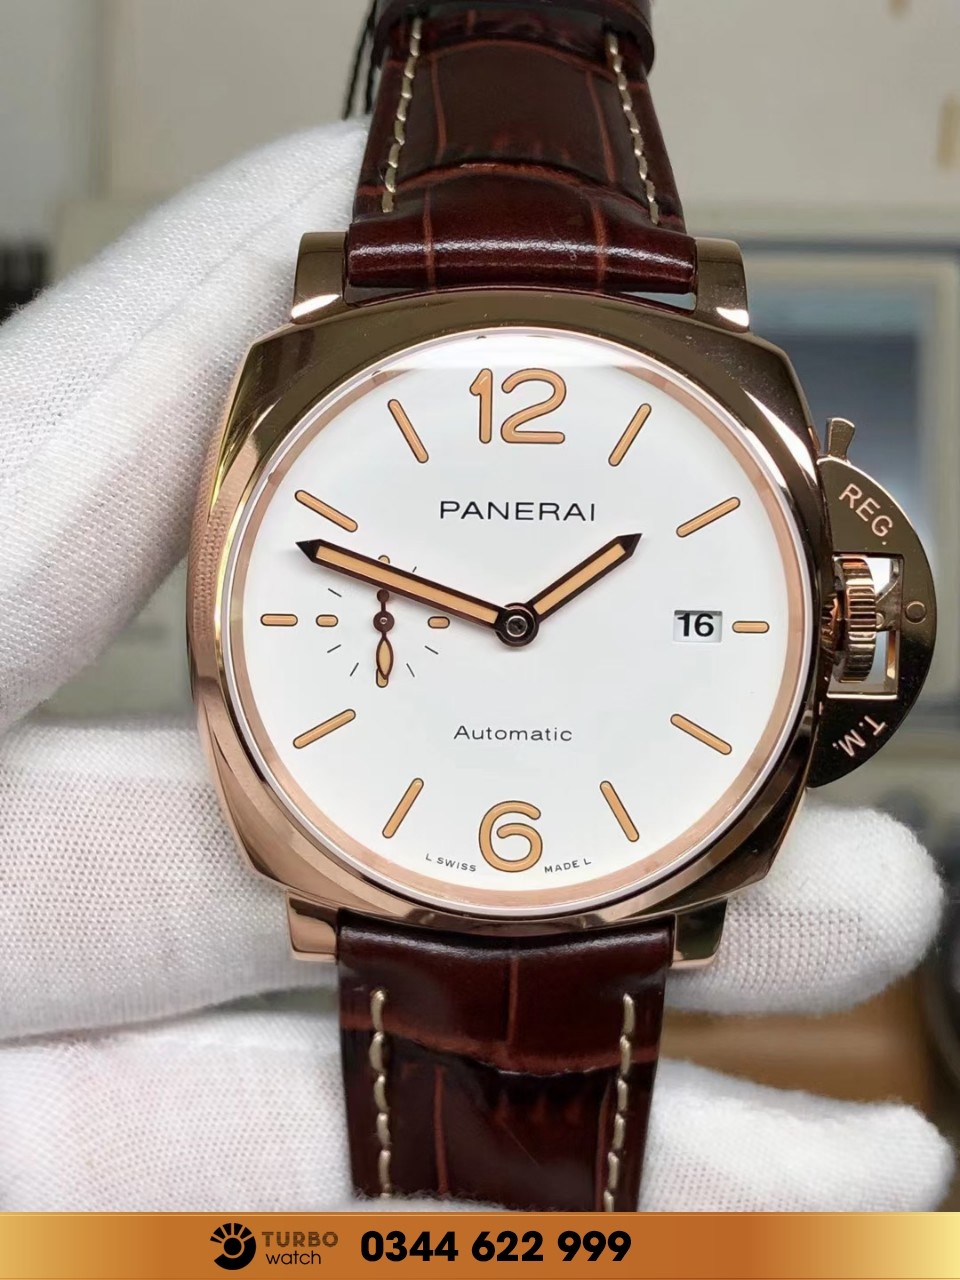 Review những ưu điểm nổi bật của đồng hồ Panerai Replica